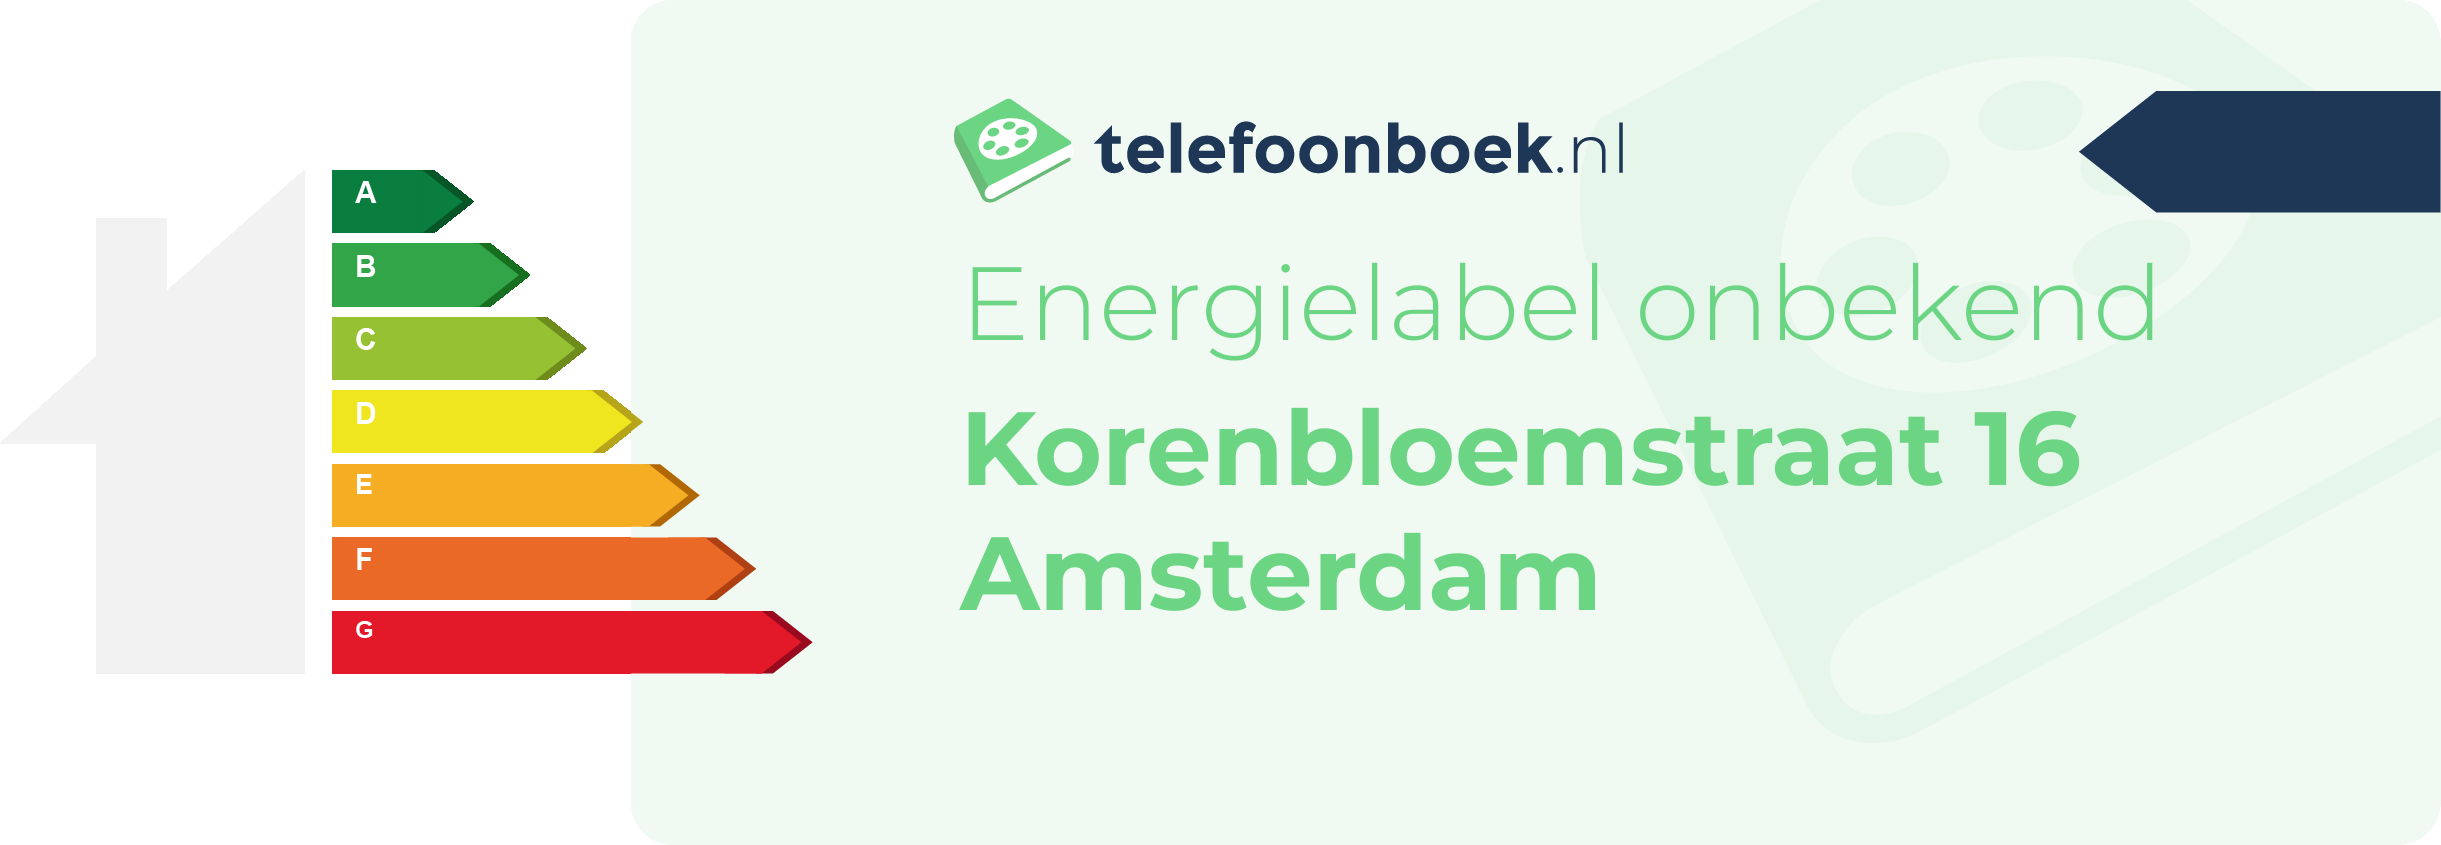 Energielabel Korenbloemstraat 16 Amsterdam